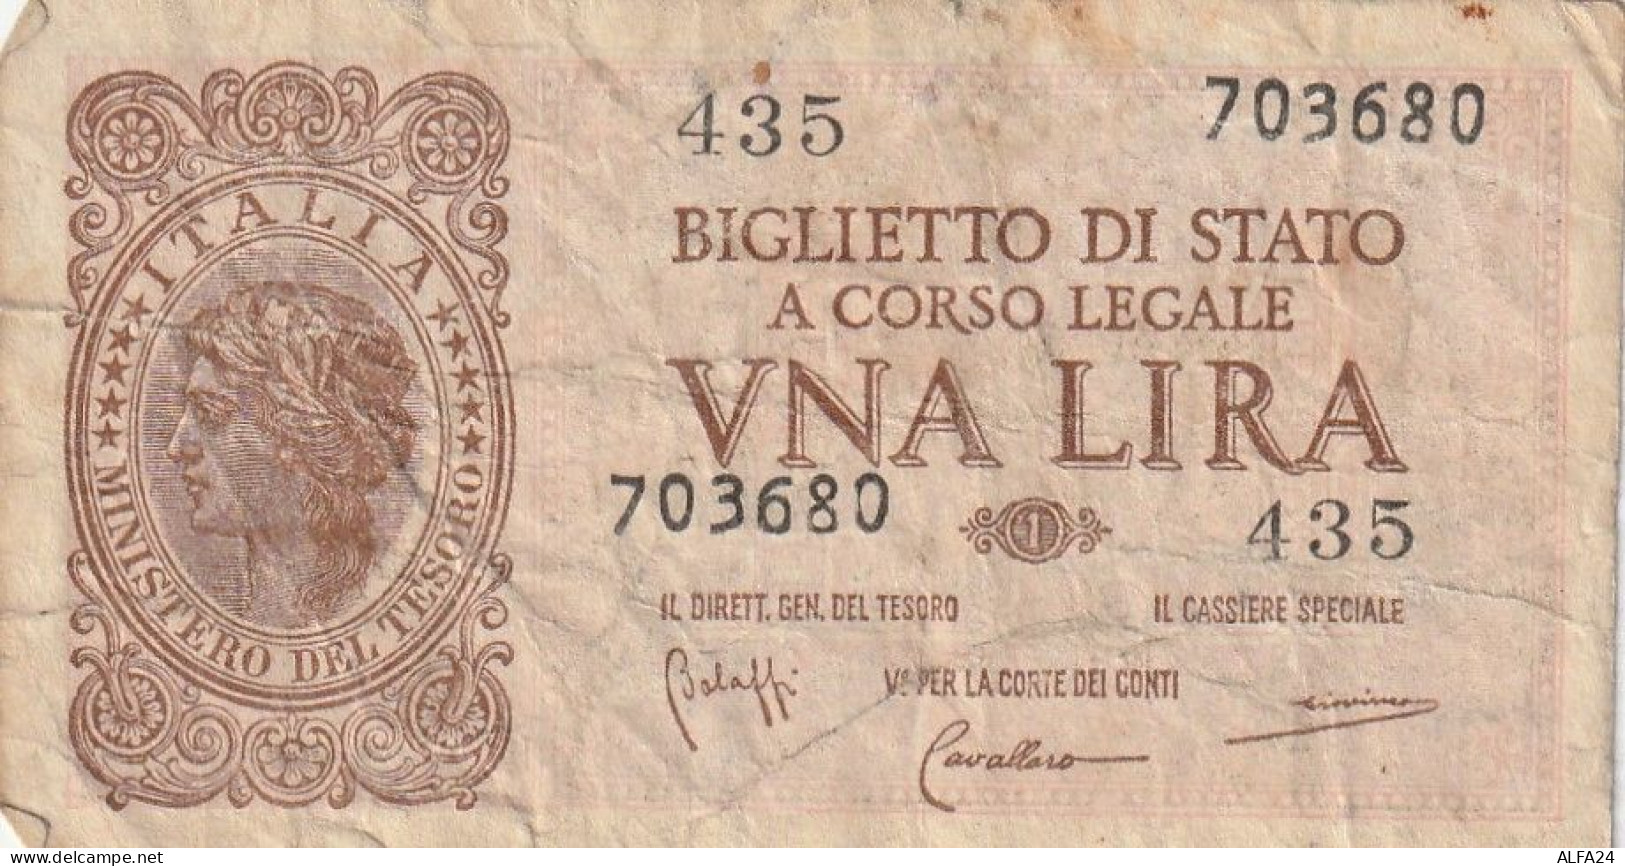 BANCONOTA BIGLIETTO DI STATO ITALIA 1 LIRA VF (RY7356 - Italia – 1 Lira